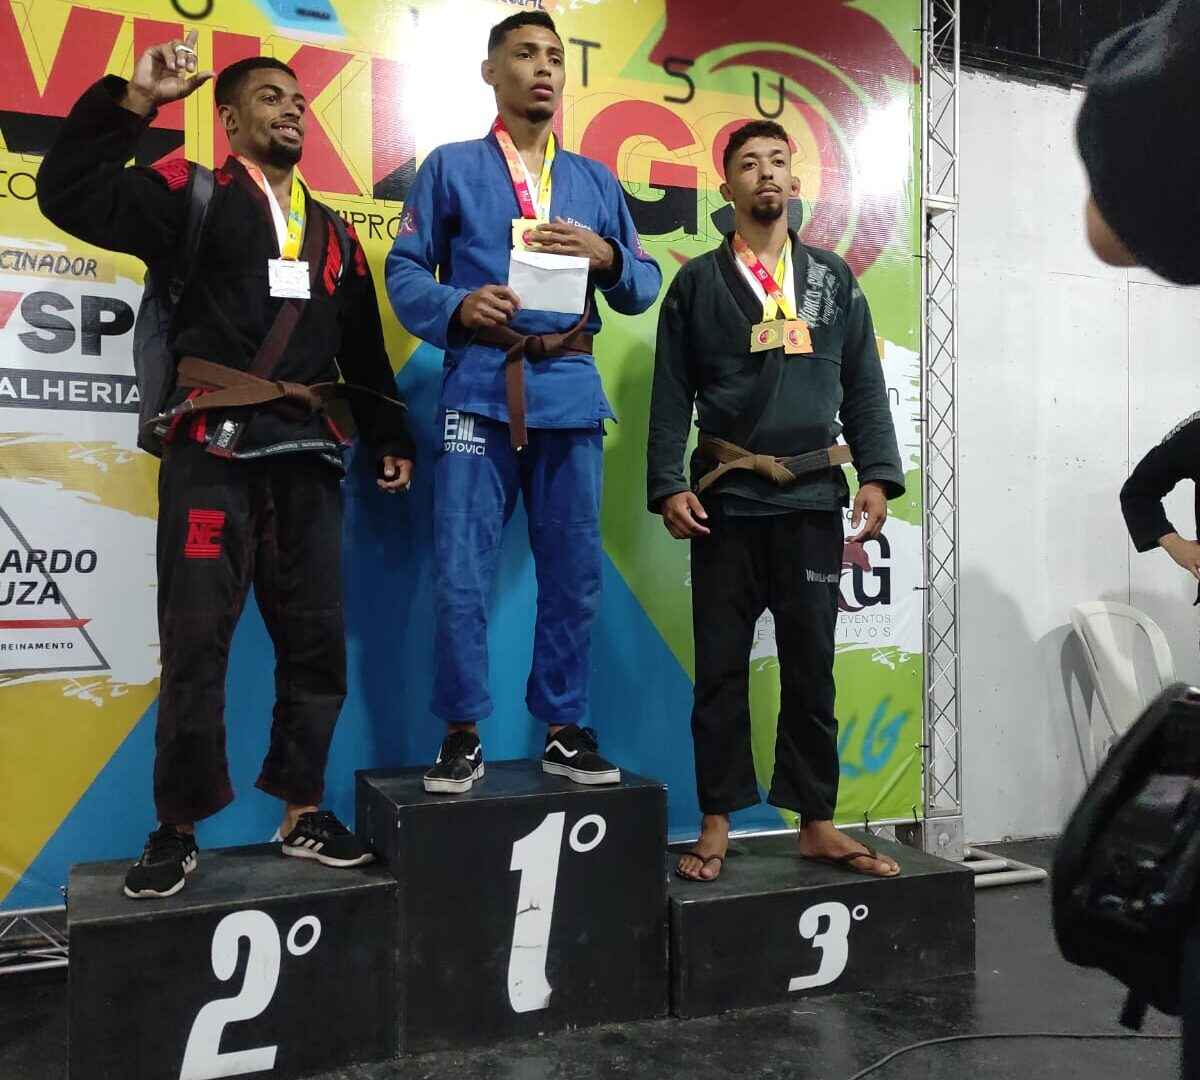 Atleta de Caraguatatuba é campeão mundial de jiu-jitsu - Nova Imprensa